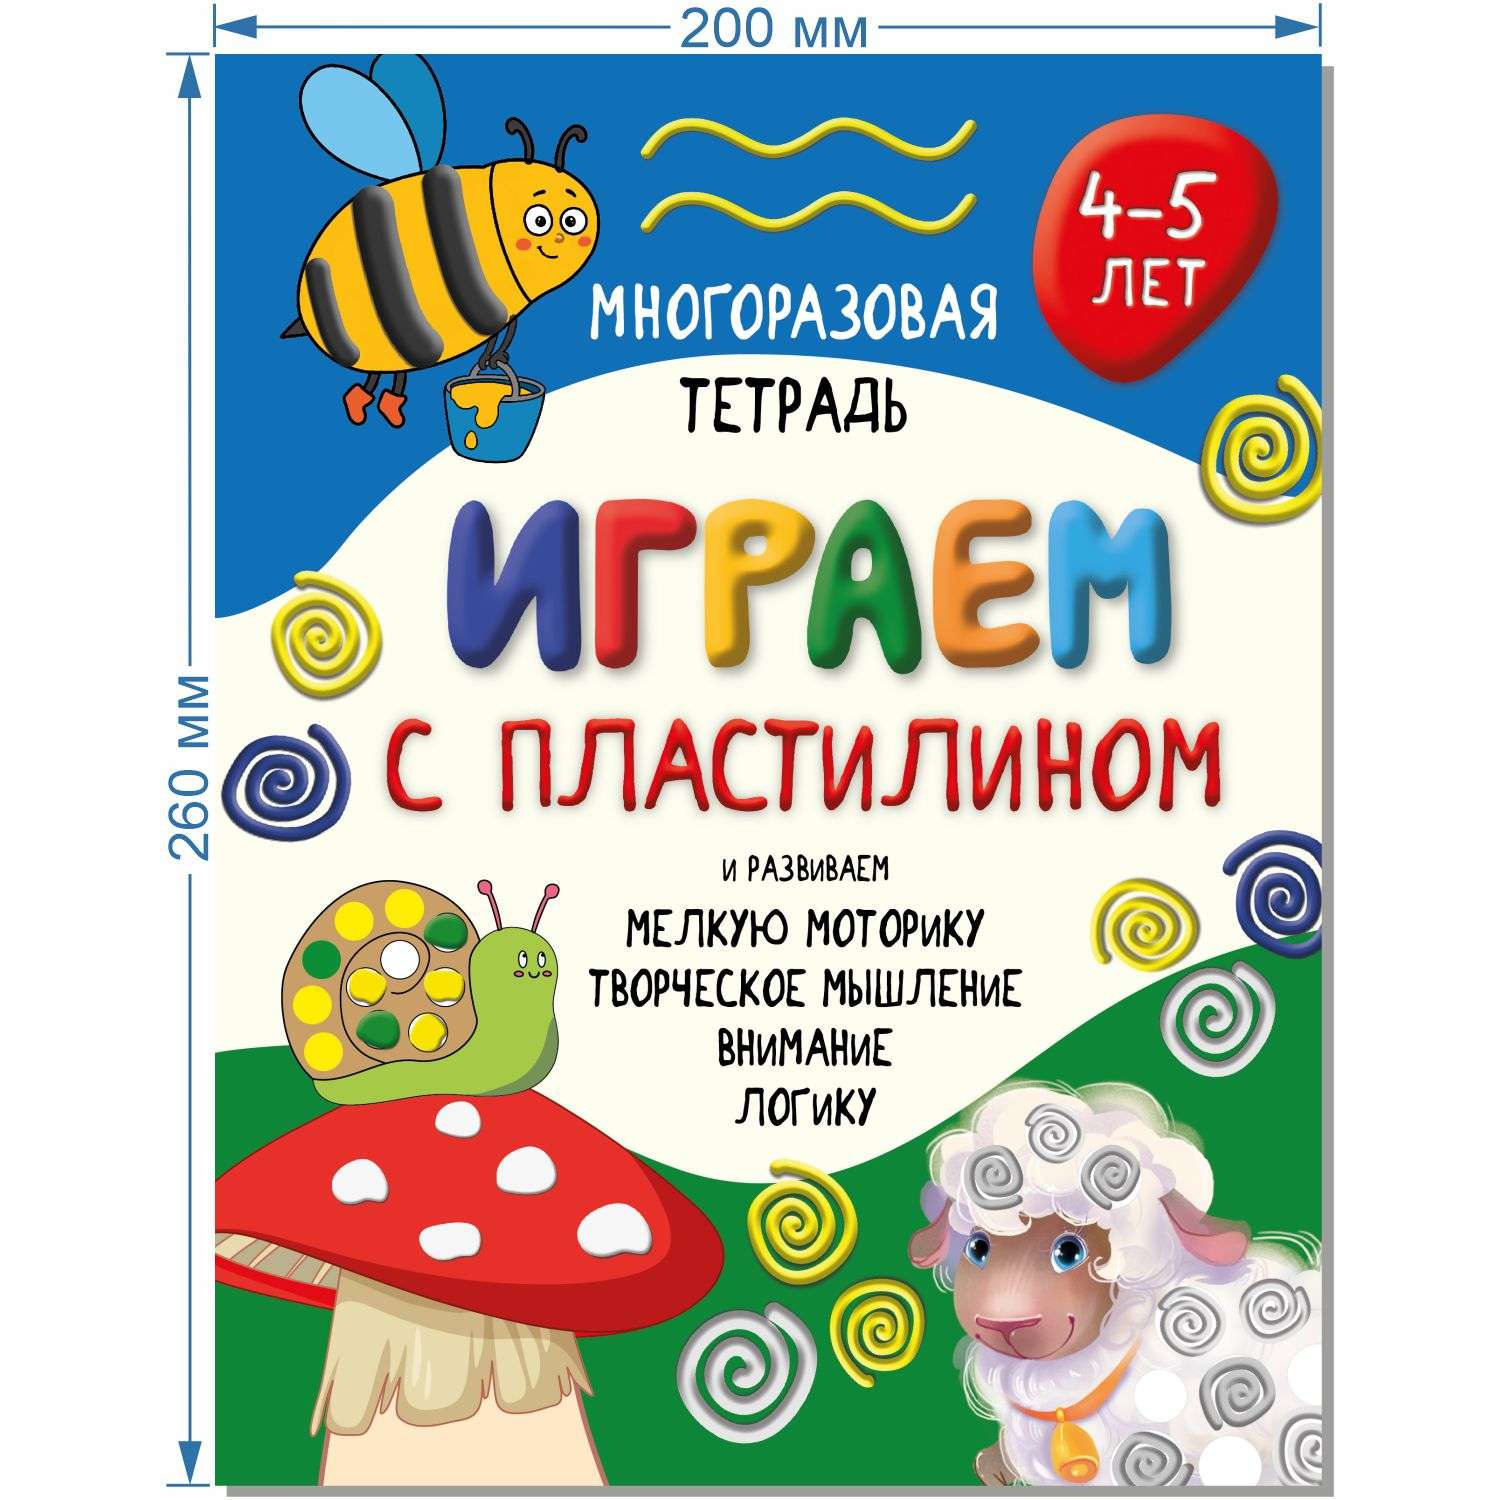 Детская книга BimBiMon Многоразовая тетрадь Играем с пластилином для детей 4-5 лет - фото 2